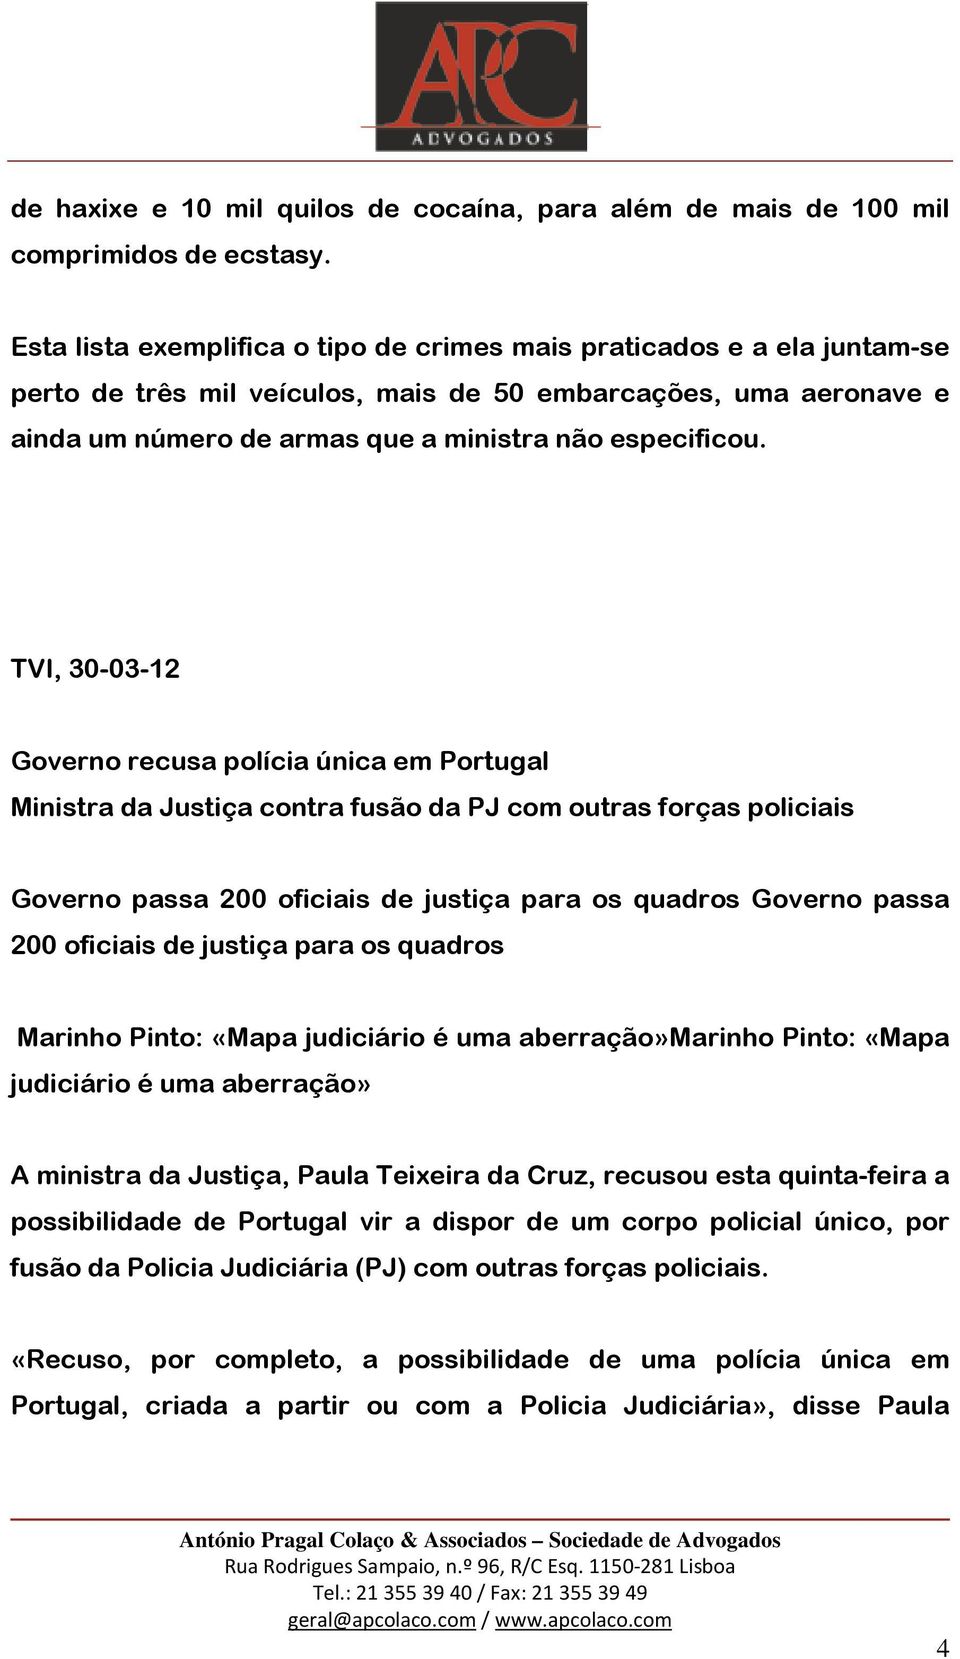 TVI, 30-03-12 Governo recusa polícia única em Portugal Ministra da Justiça contra fusão da PJ com outras forças policiais Governo passa 200 oficiais de justiça para os quadros Governo passa 200